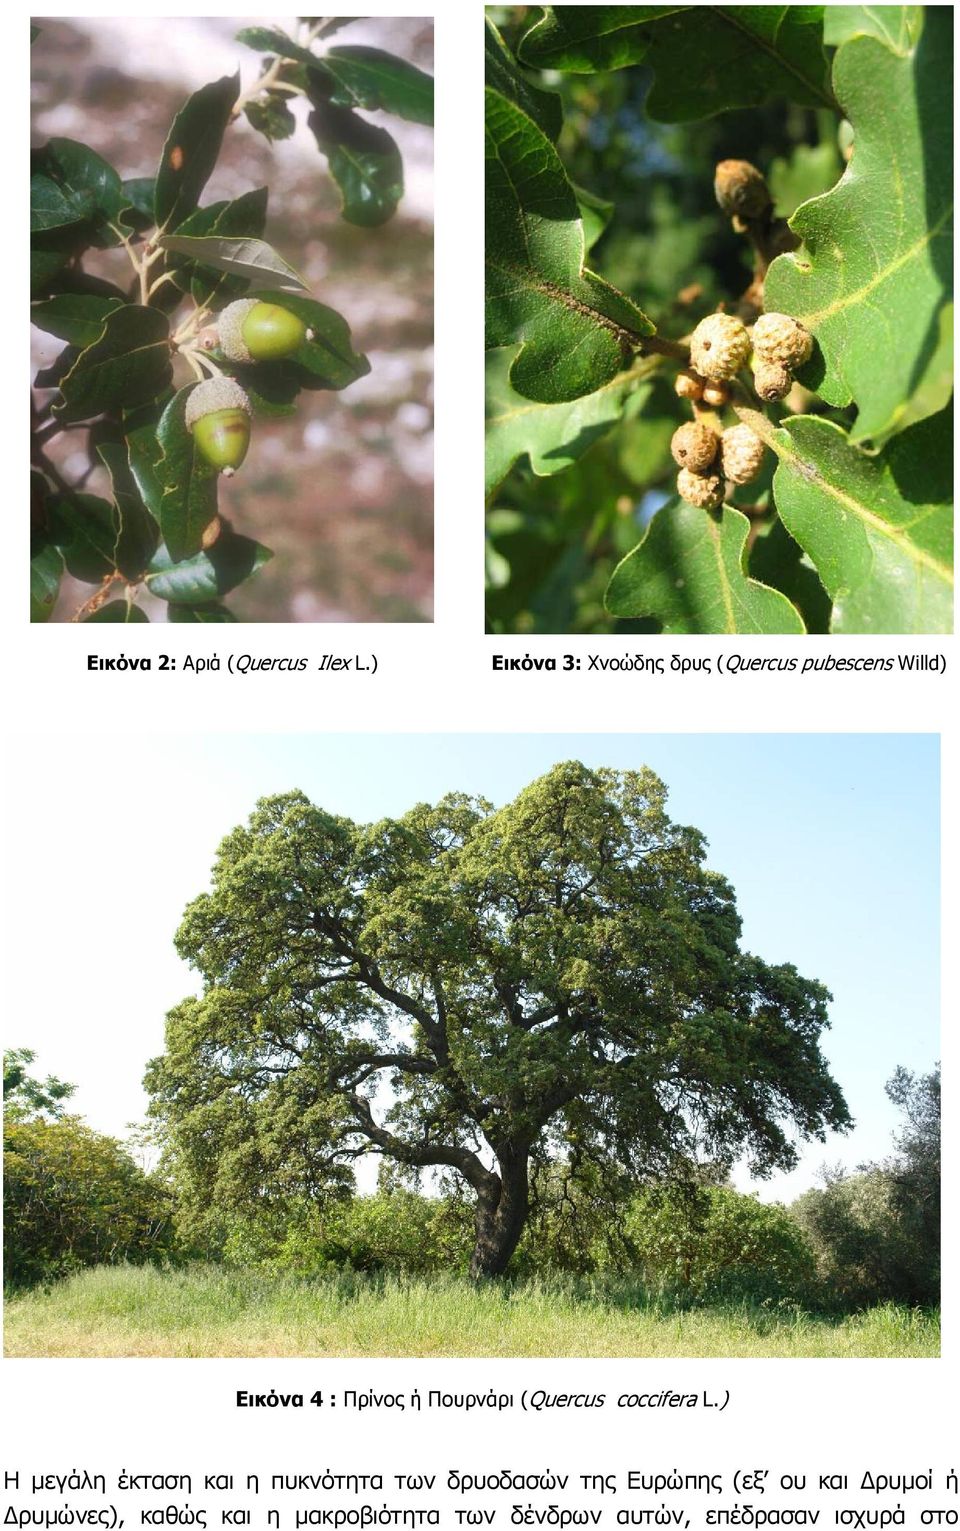 Πουρνάρι (Quercus coccifera L.